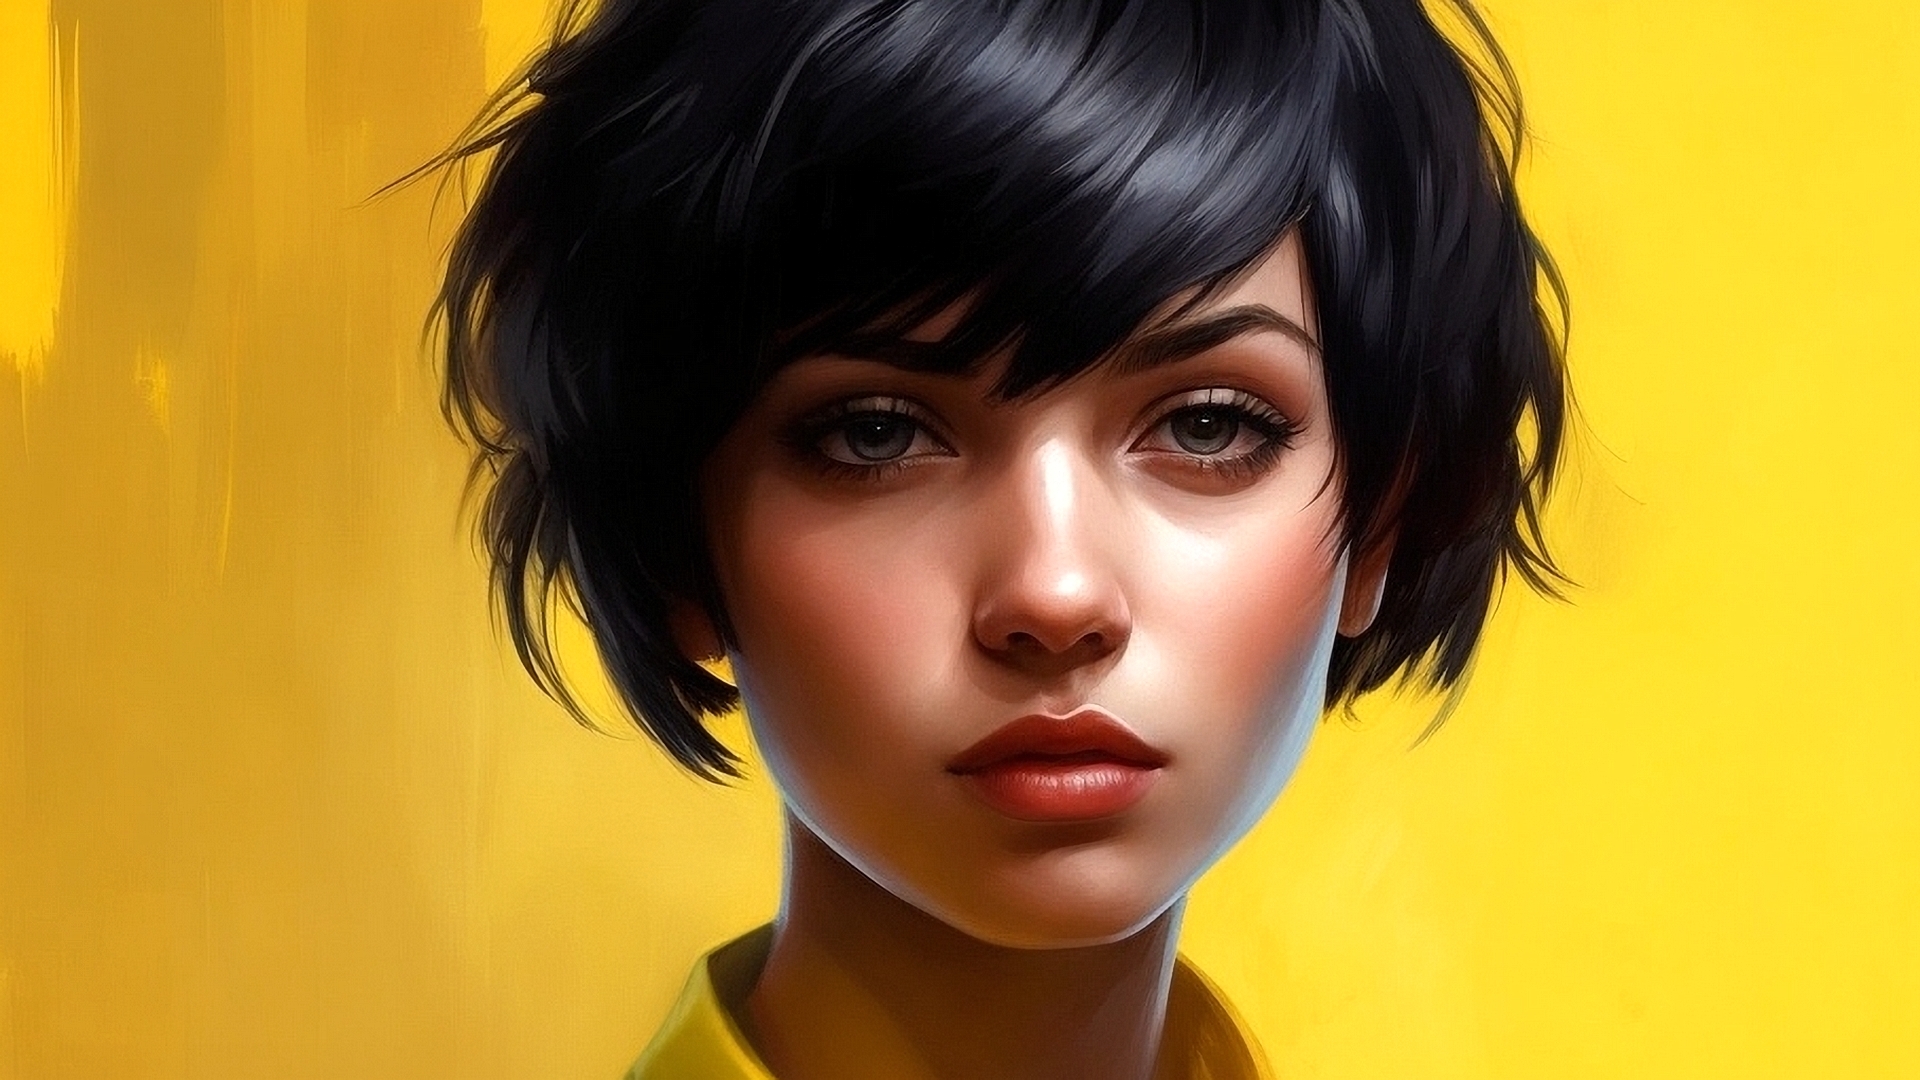 Бесплатное фото Портрет девушки с короткой стрижкой на желтом фоне